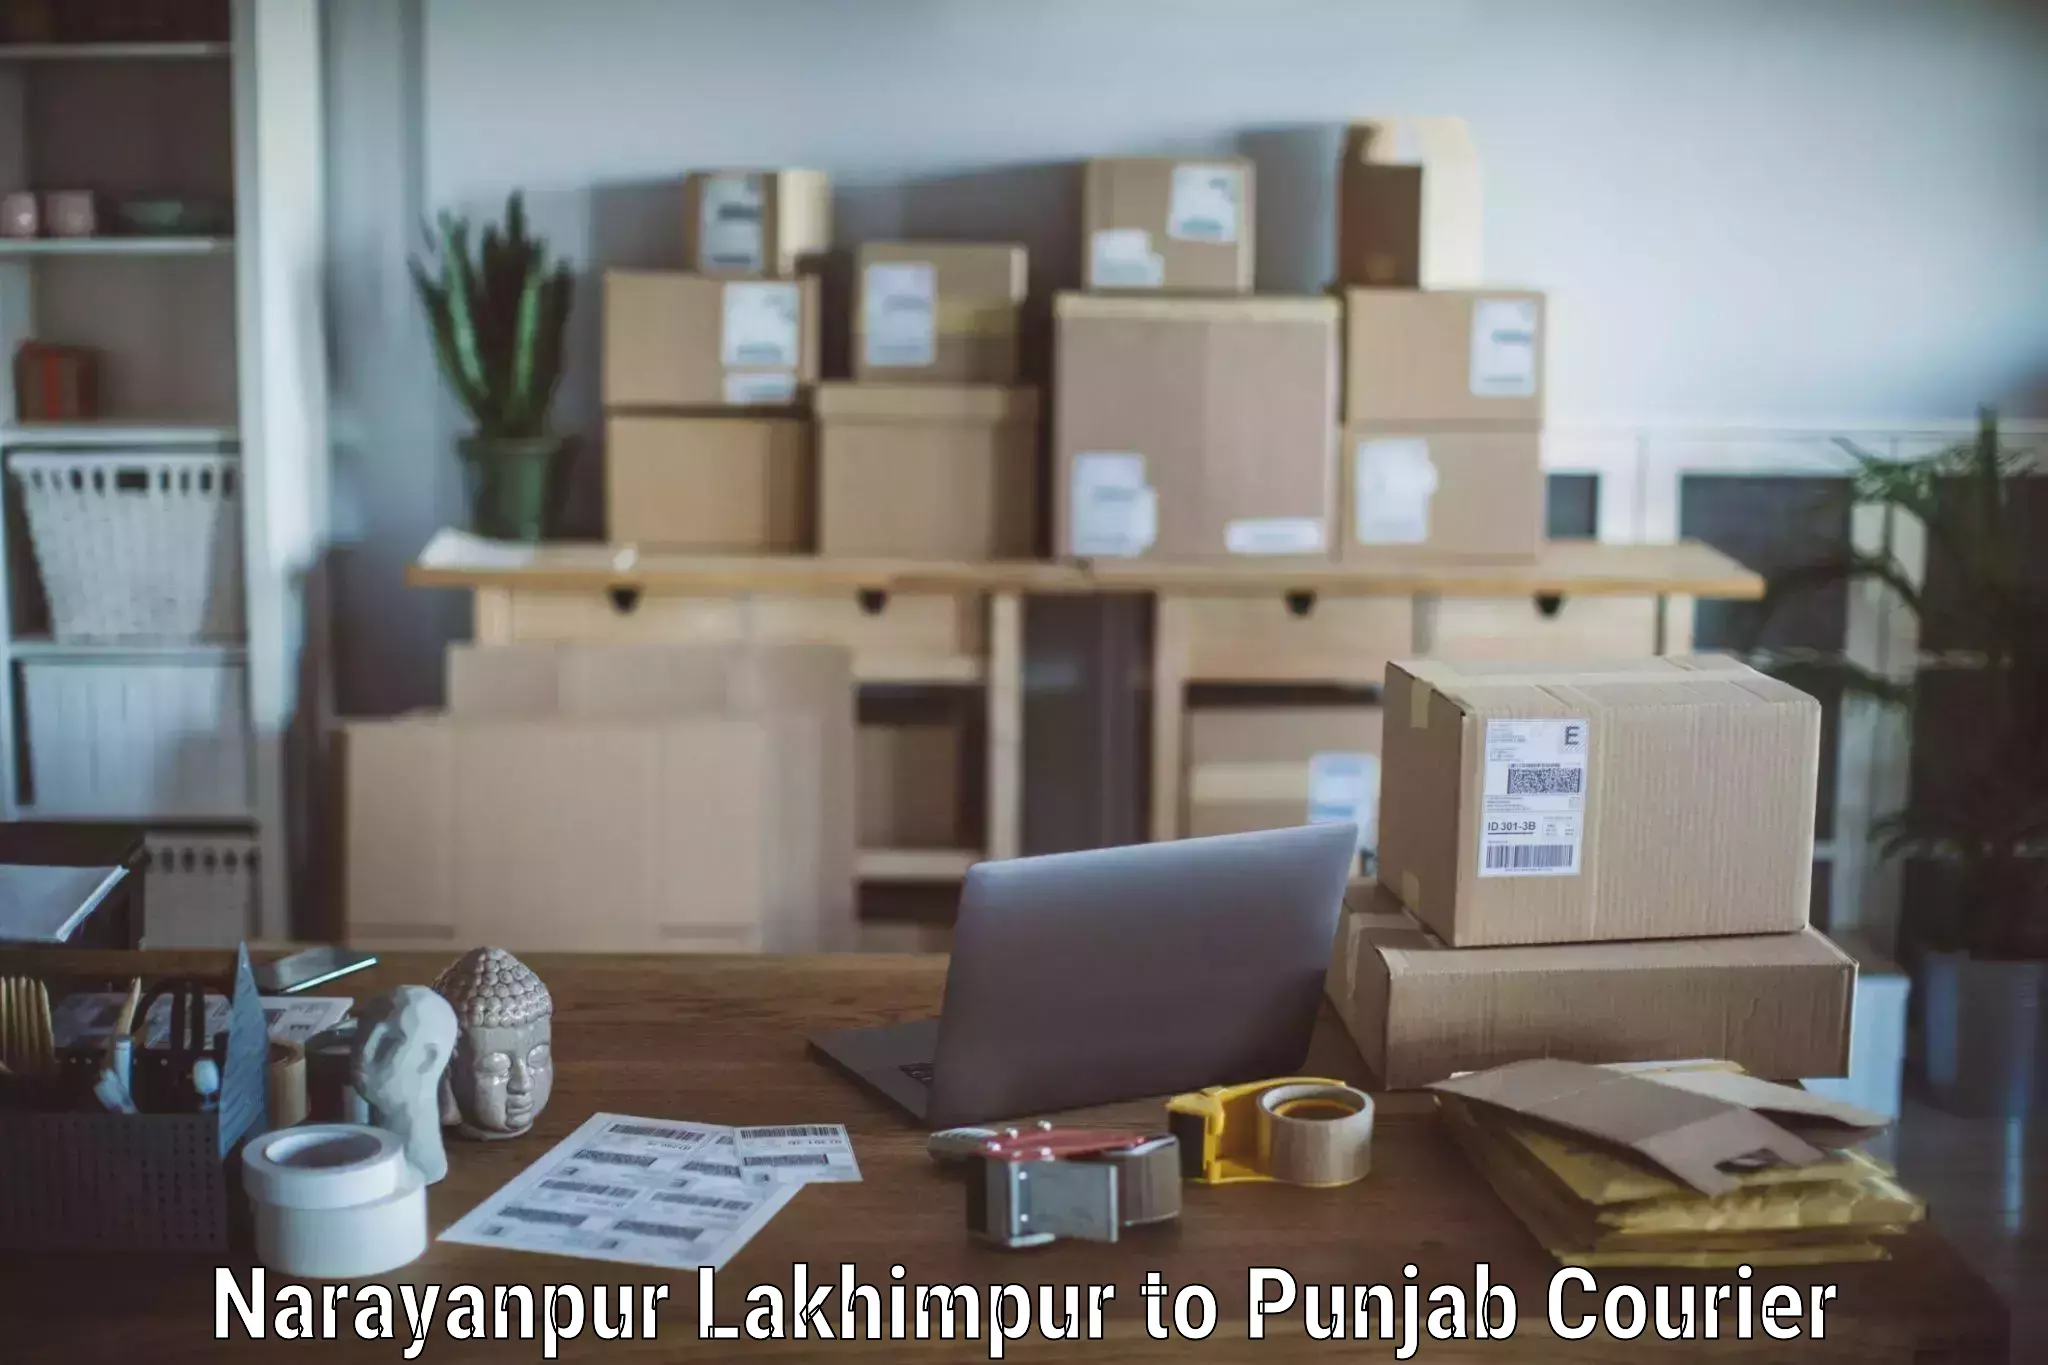 Furniture transport professionals Narayanpur Lakhimpur to Sangrur